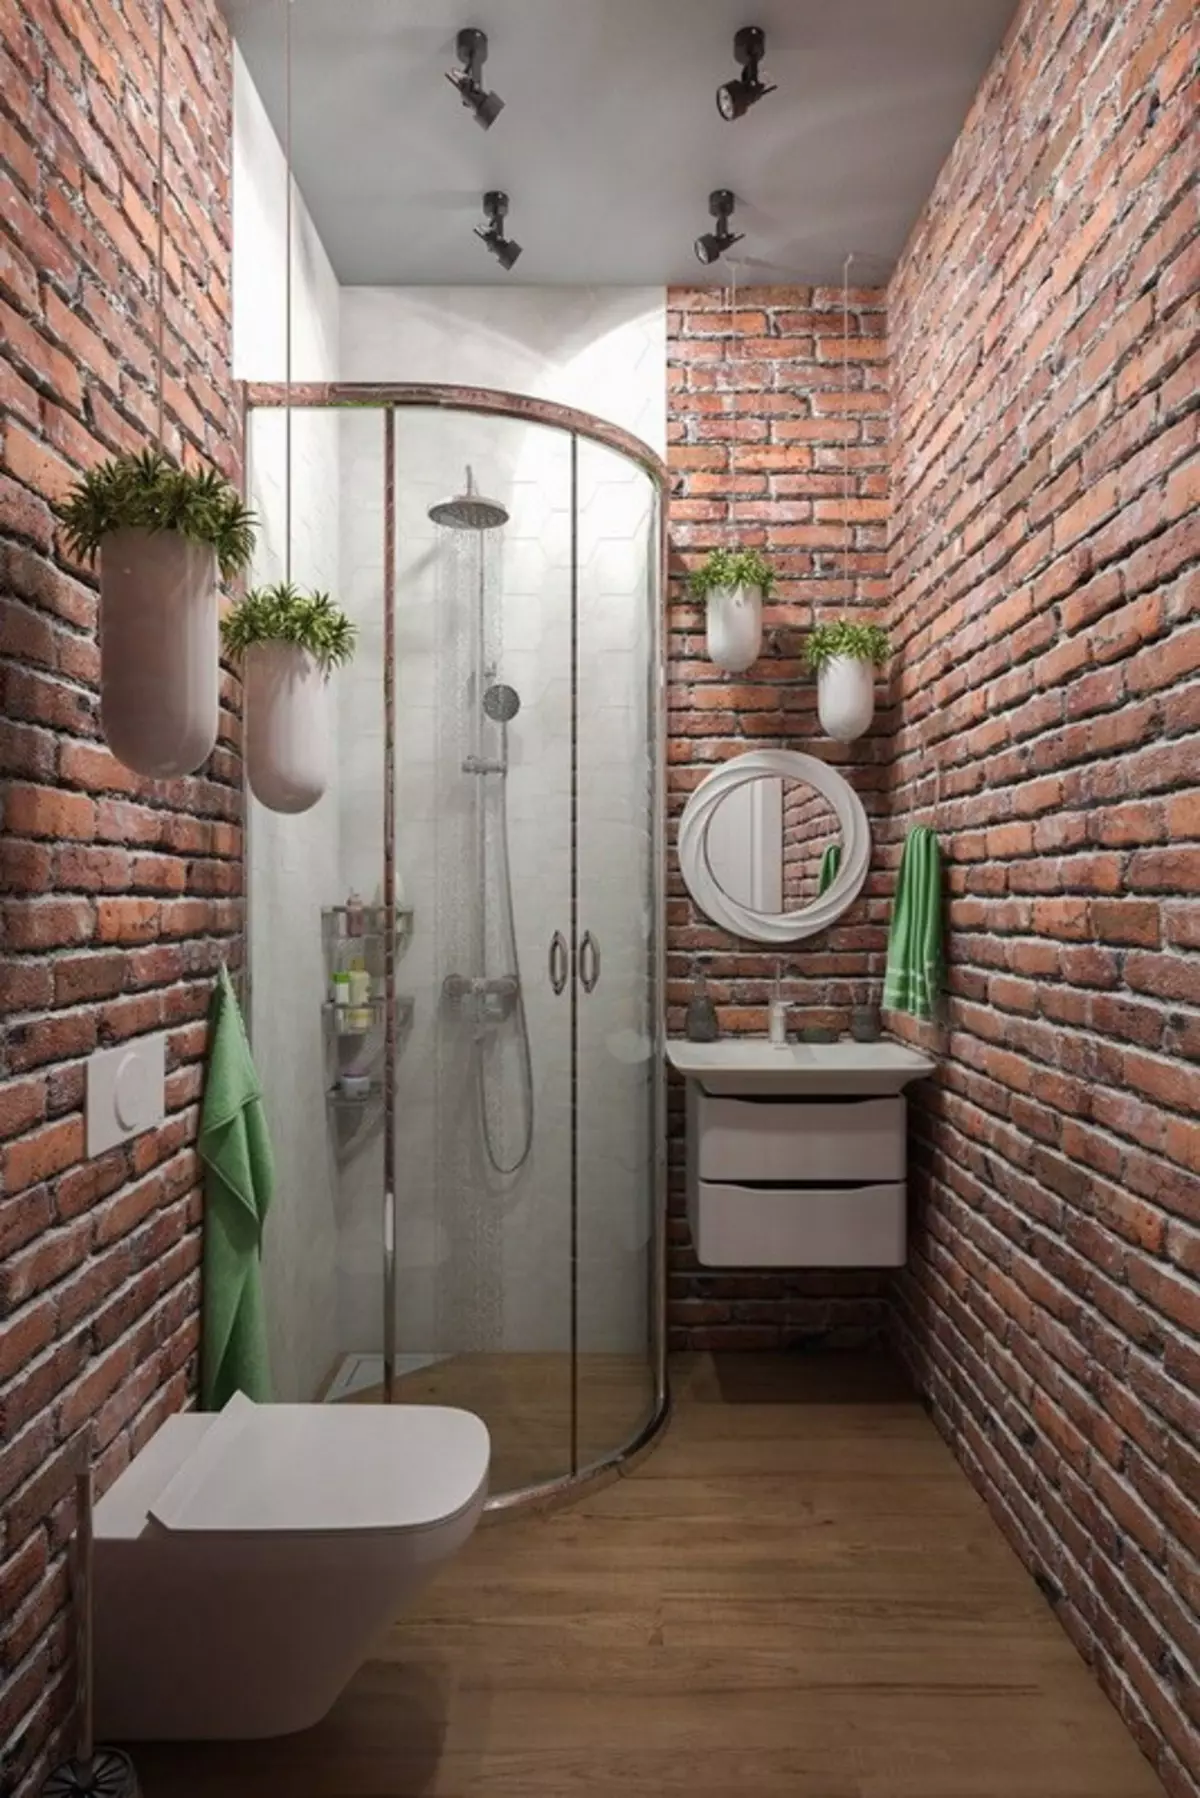 Loft toilet (40 foto's): Toilet interieurontwerp opsies Baie klein area, telefoon seleksie 10498_27